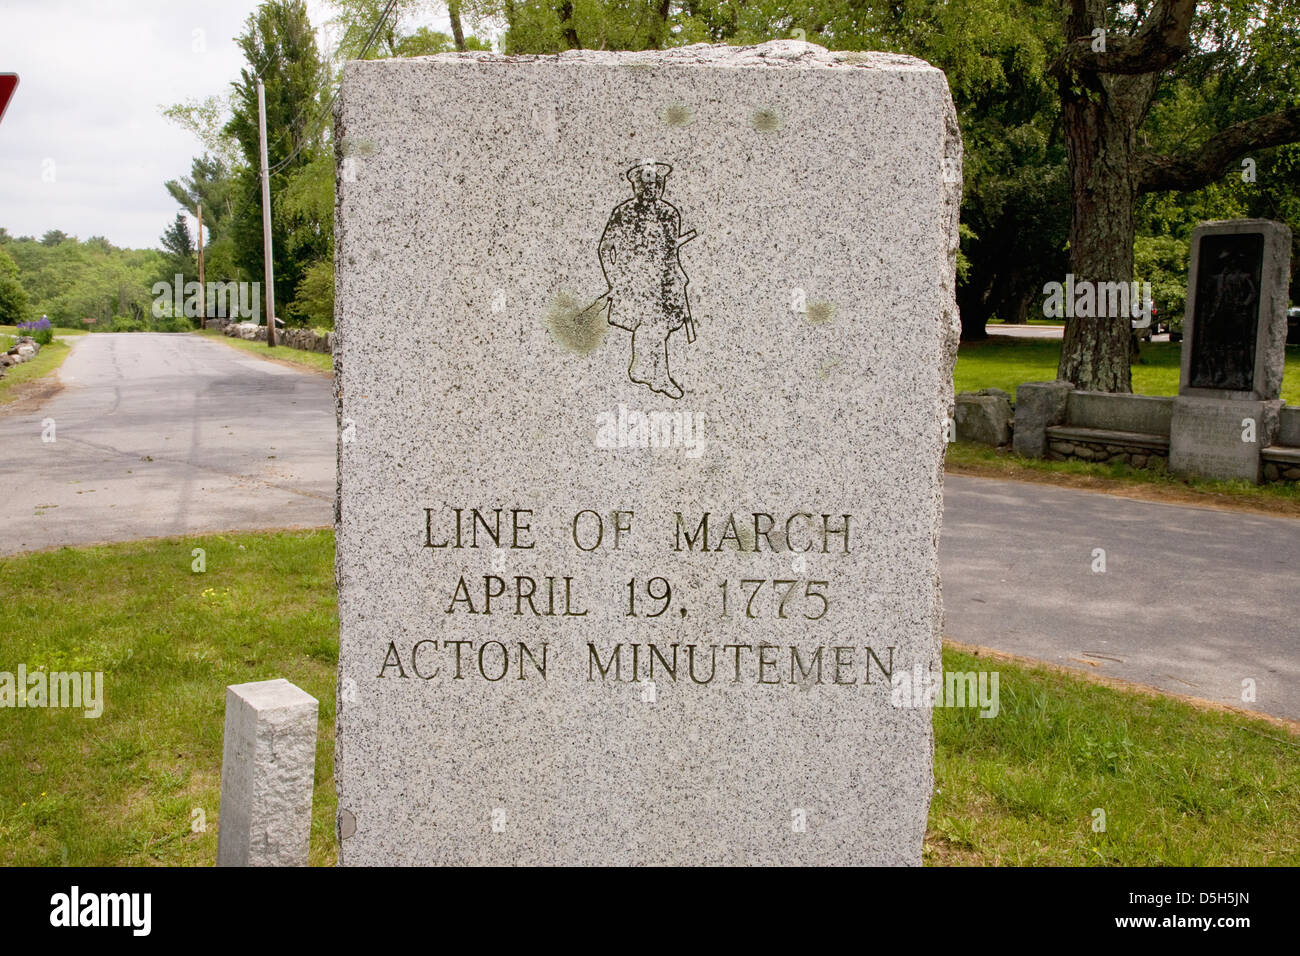 La guerre révolutionnaire marque signe pierre où Acton Minutemen et ligne de Mars, Avril 19, 1775, Lexington, MA Banque D'Images